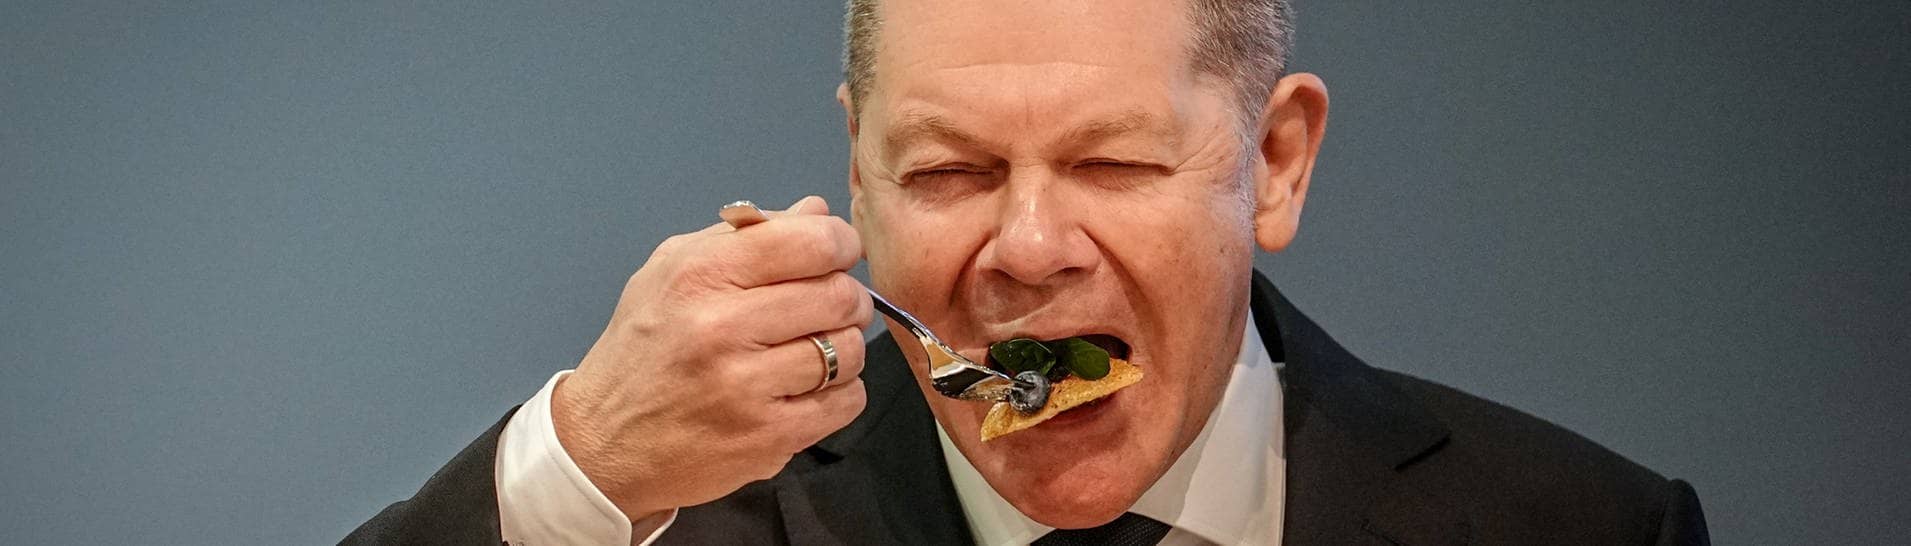 Bundeskanzler Olaf Scholz (SPD) führt eine Gabel mit Essen zum Mund.